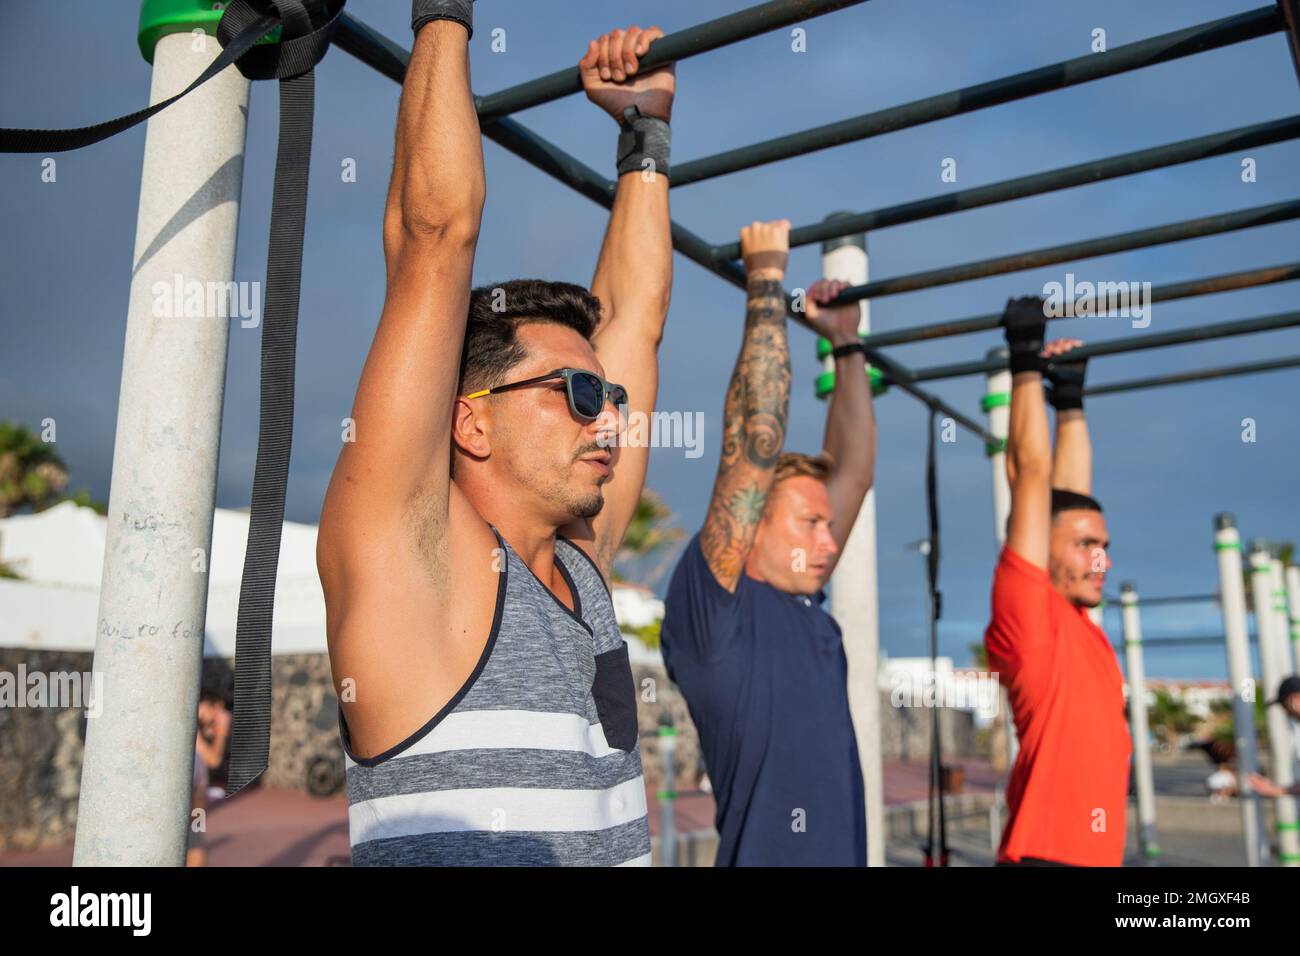 Tre uomini allenano facendo pull up in una palestra all'aperto, sport e stile di vita sano Foto Stock